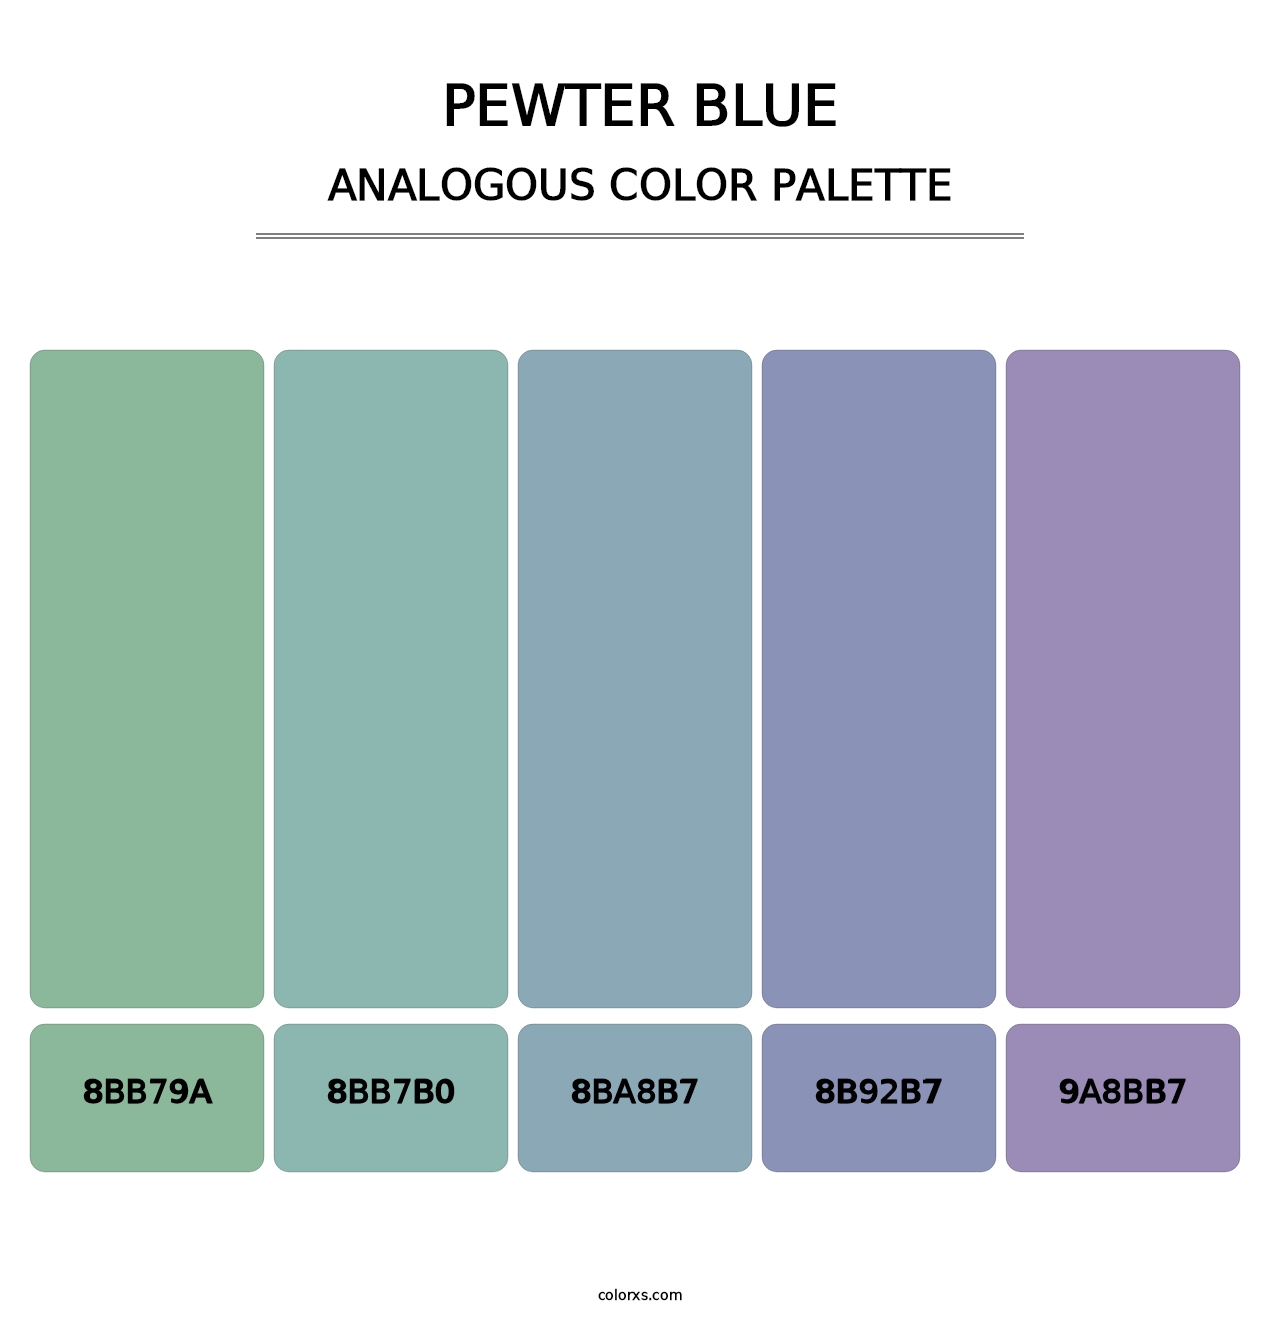 Pewter Blue - Analogous Color Palette